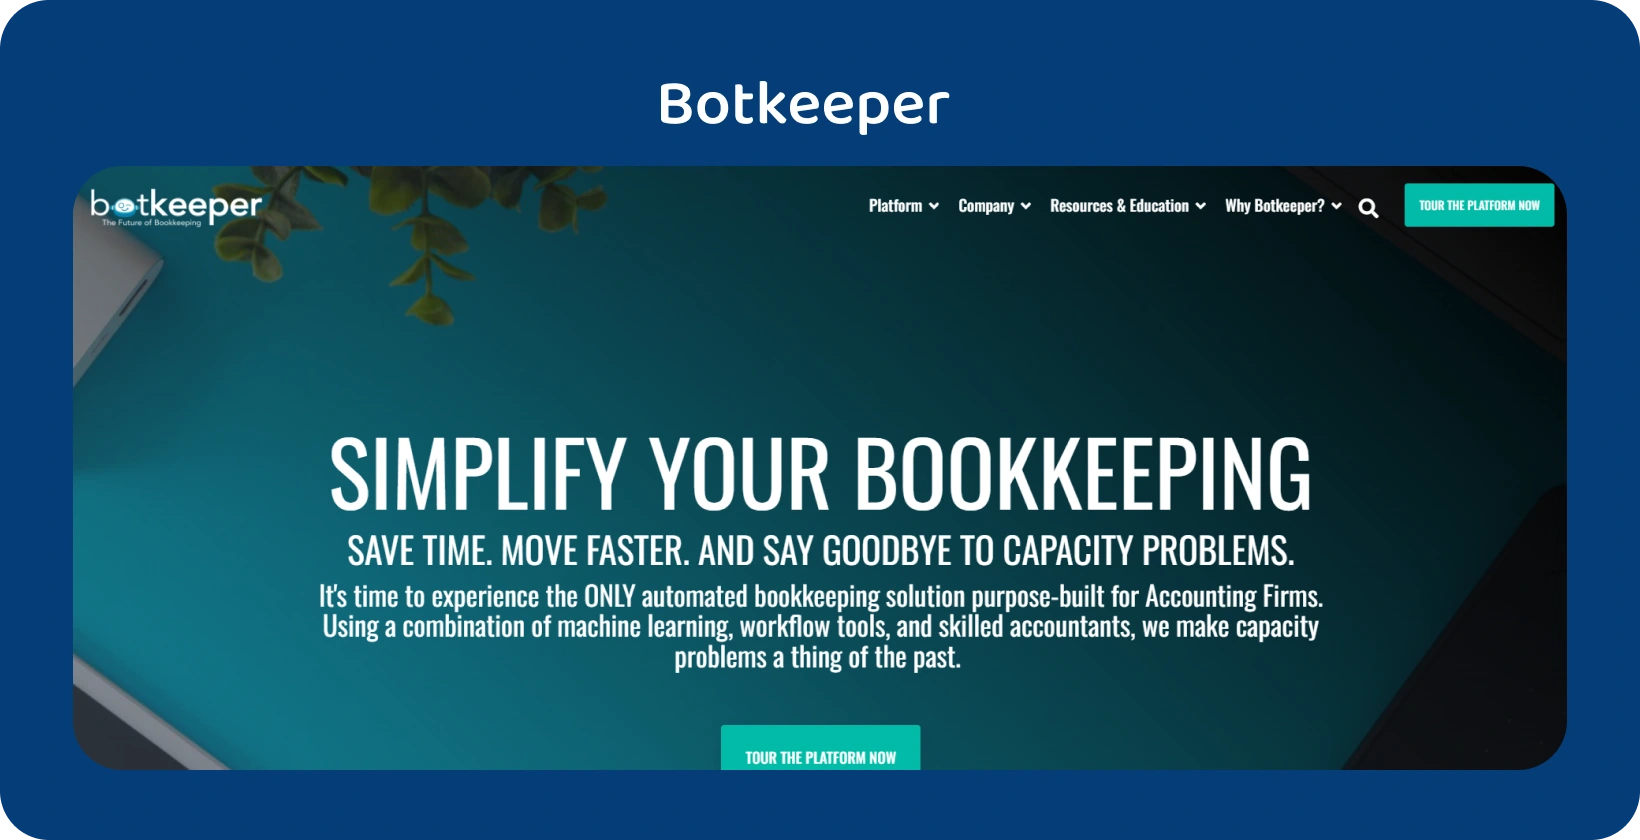 "Botkeeper" pagrindiniame puslapyje pabrėžiamas buhalterių buhalterinės apskaitos supaprastinimas naudojant automatizavimo technologiją.